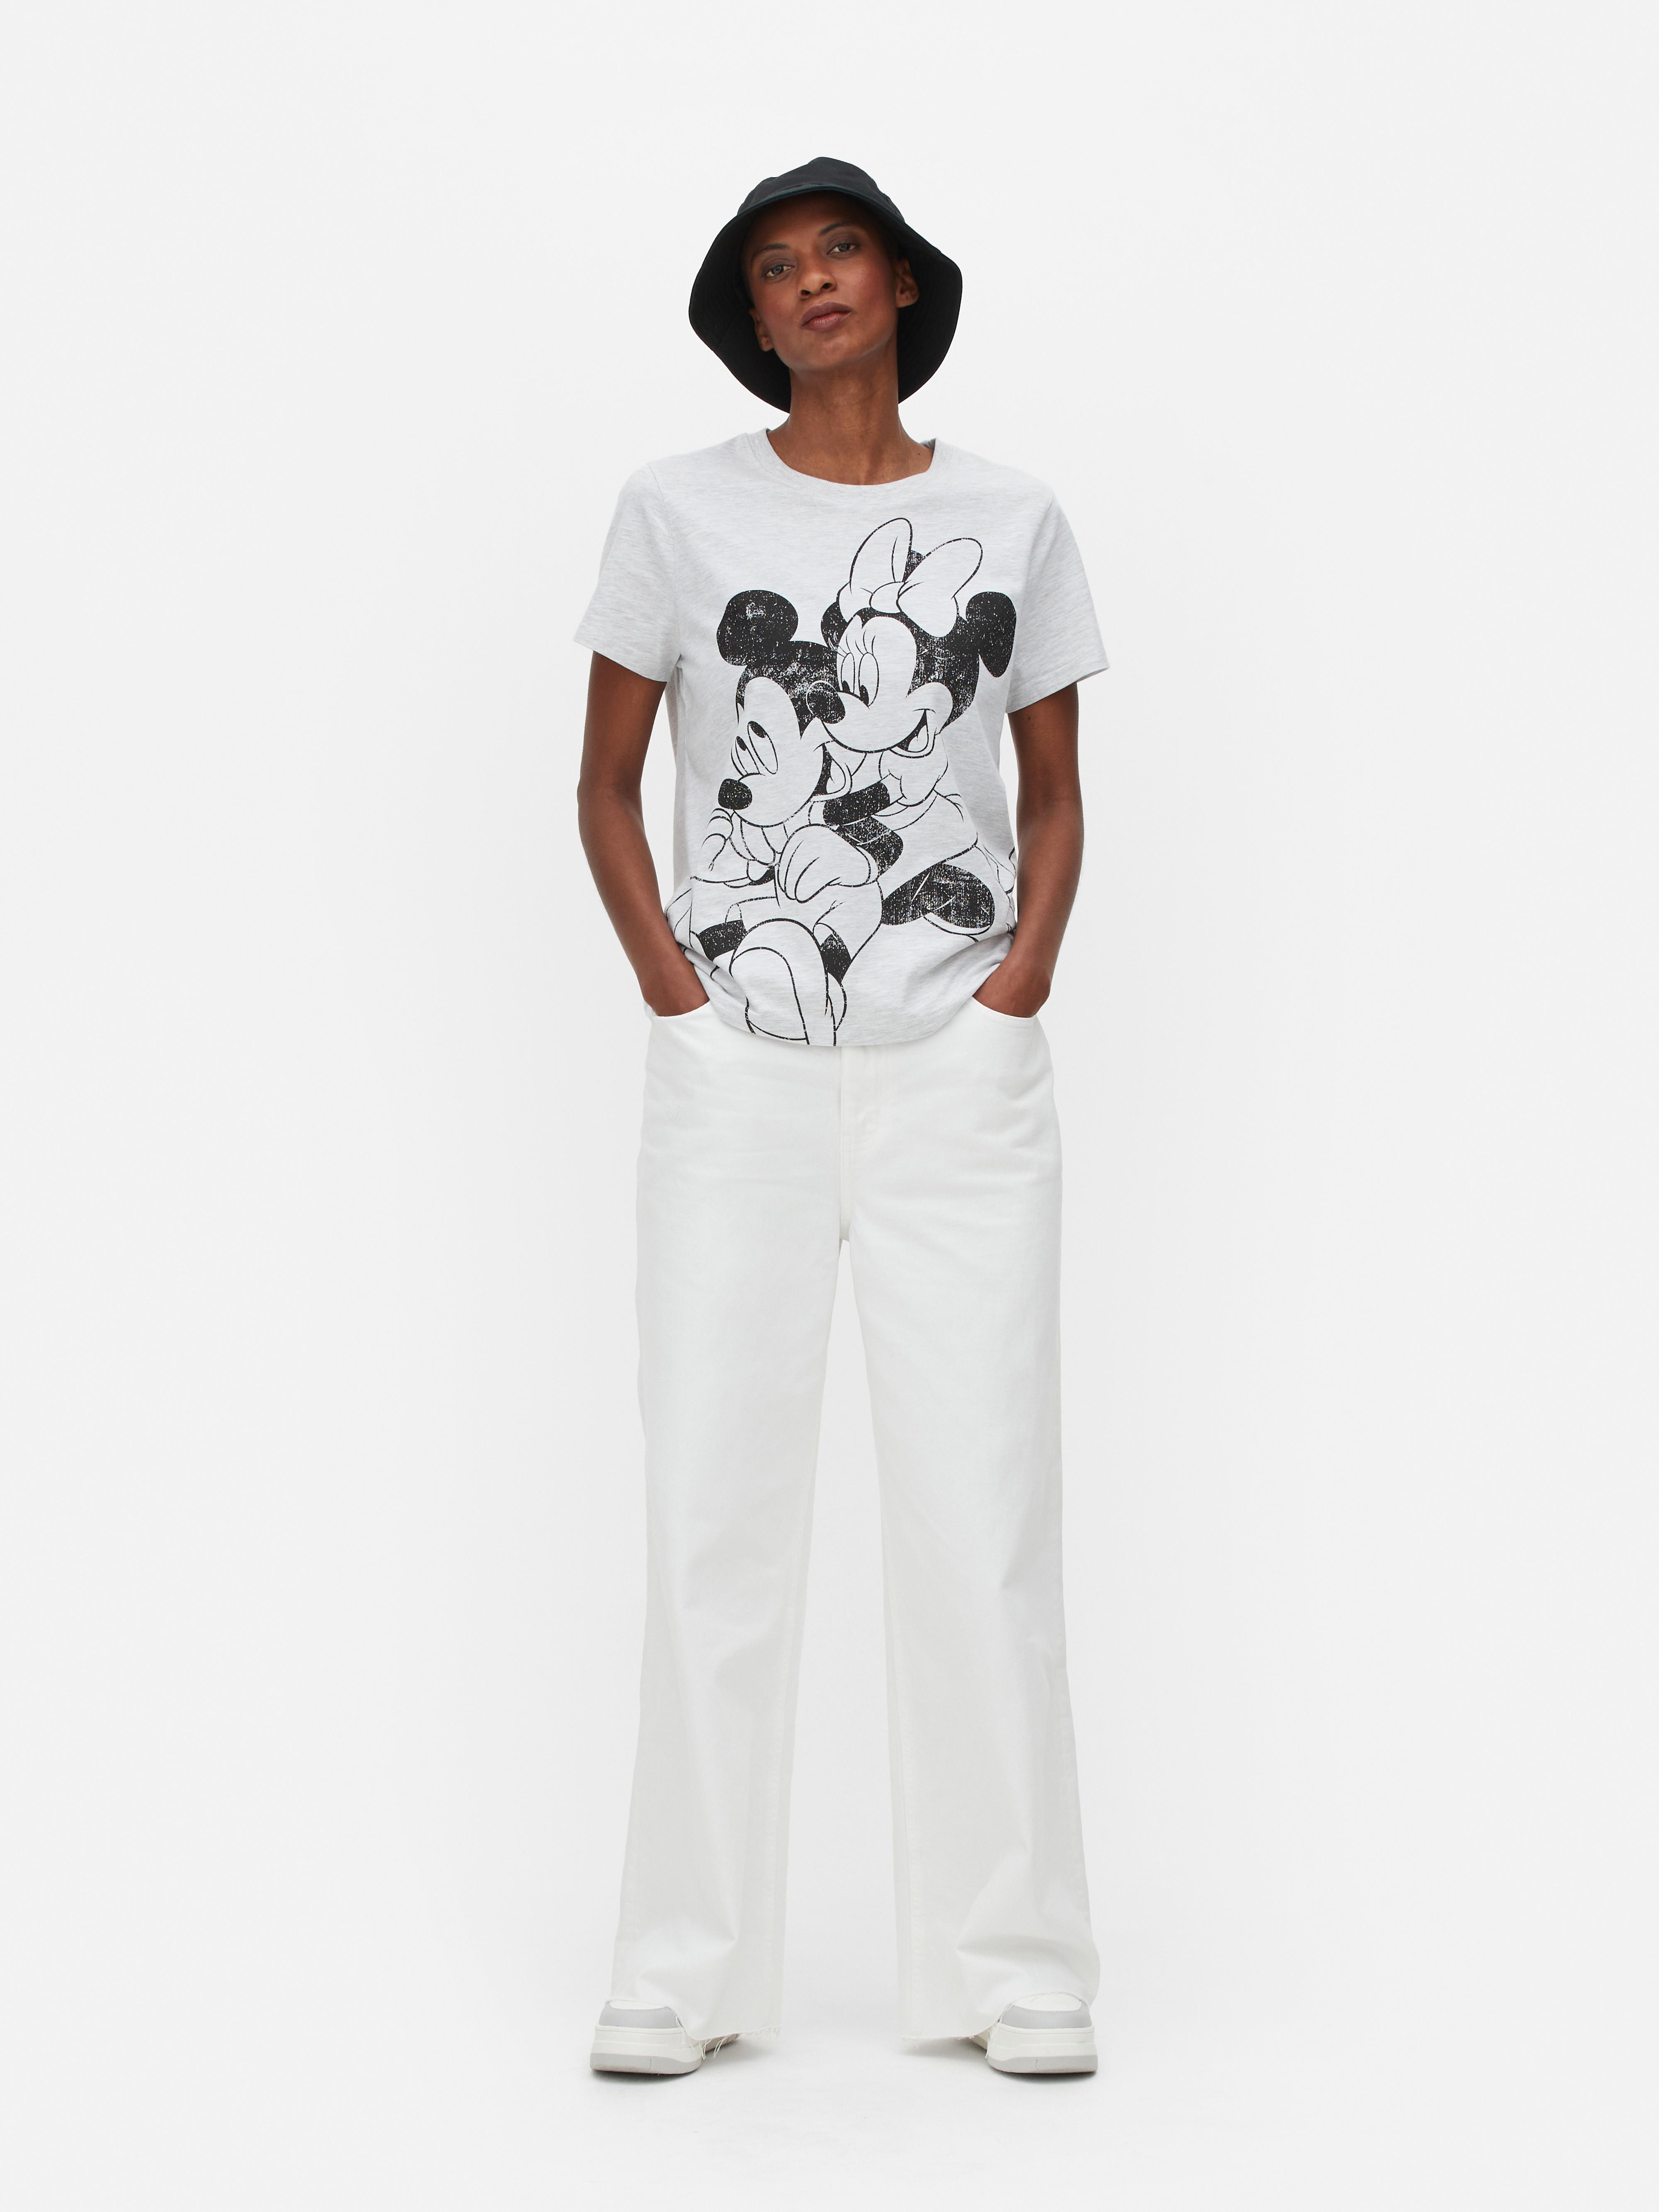 „Disney Micky Maus und Minnie Maus“ T-Shirt